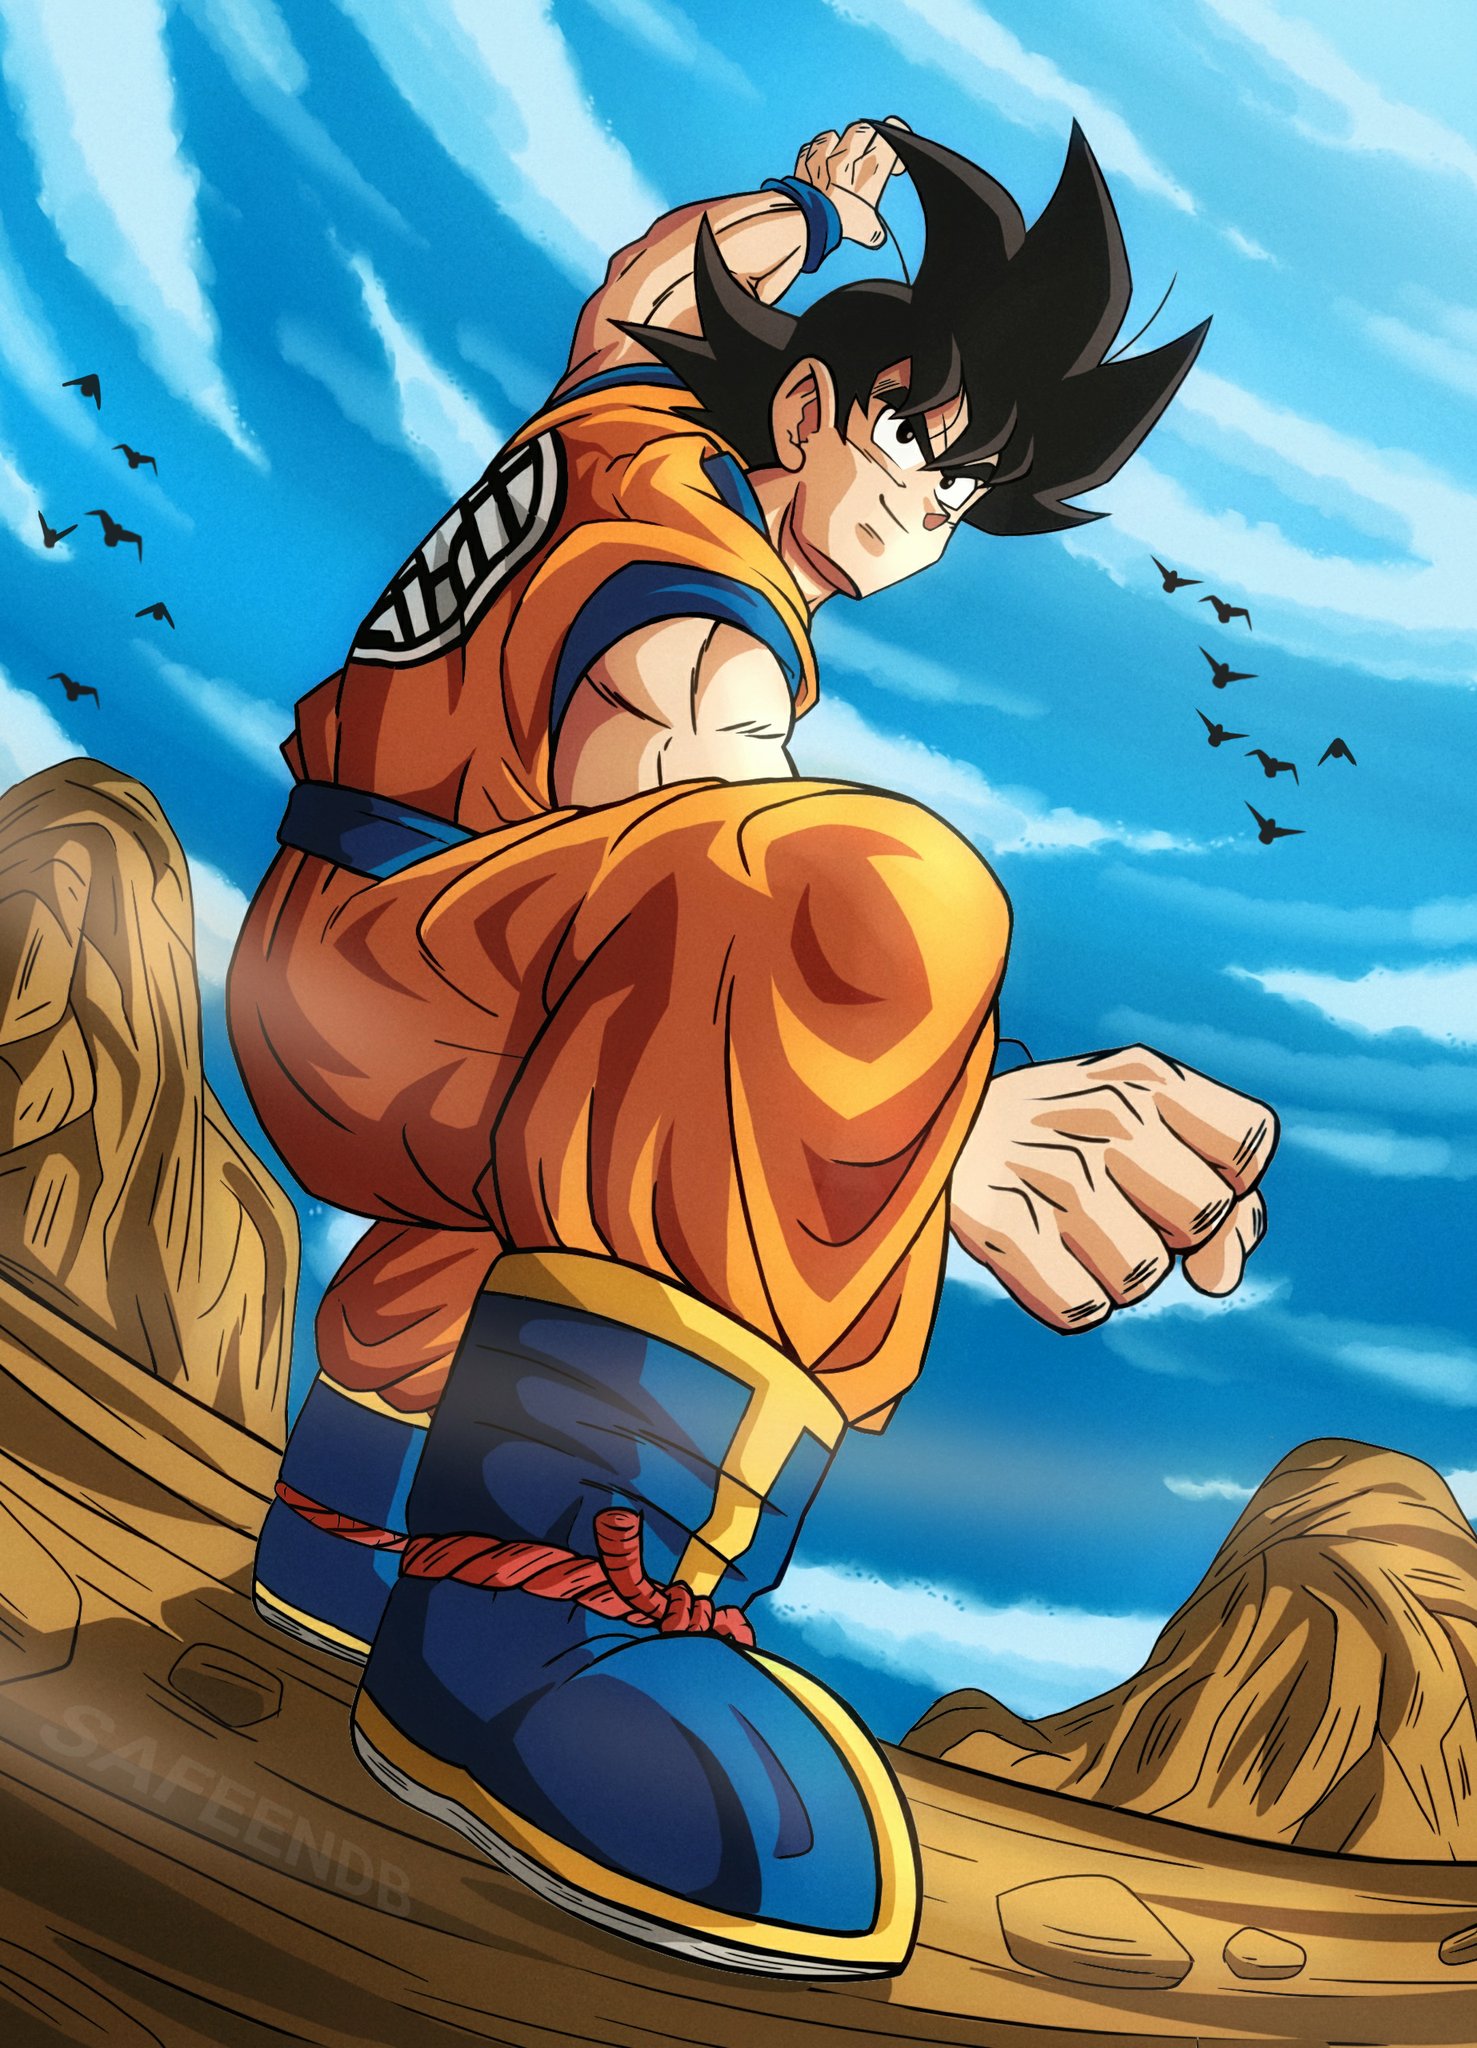 Goku Fighting - Goku Transparent Transparent PNG - 730x1095 - Free Download  on NicePNG